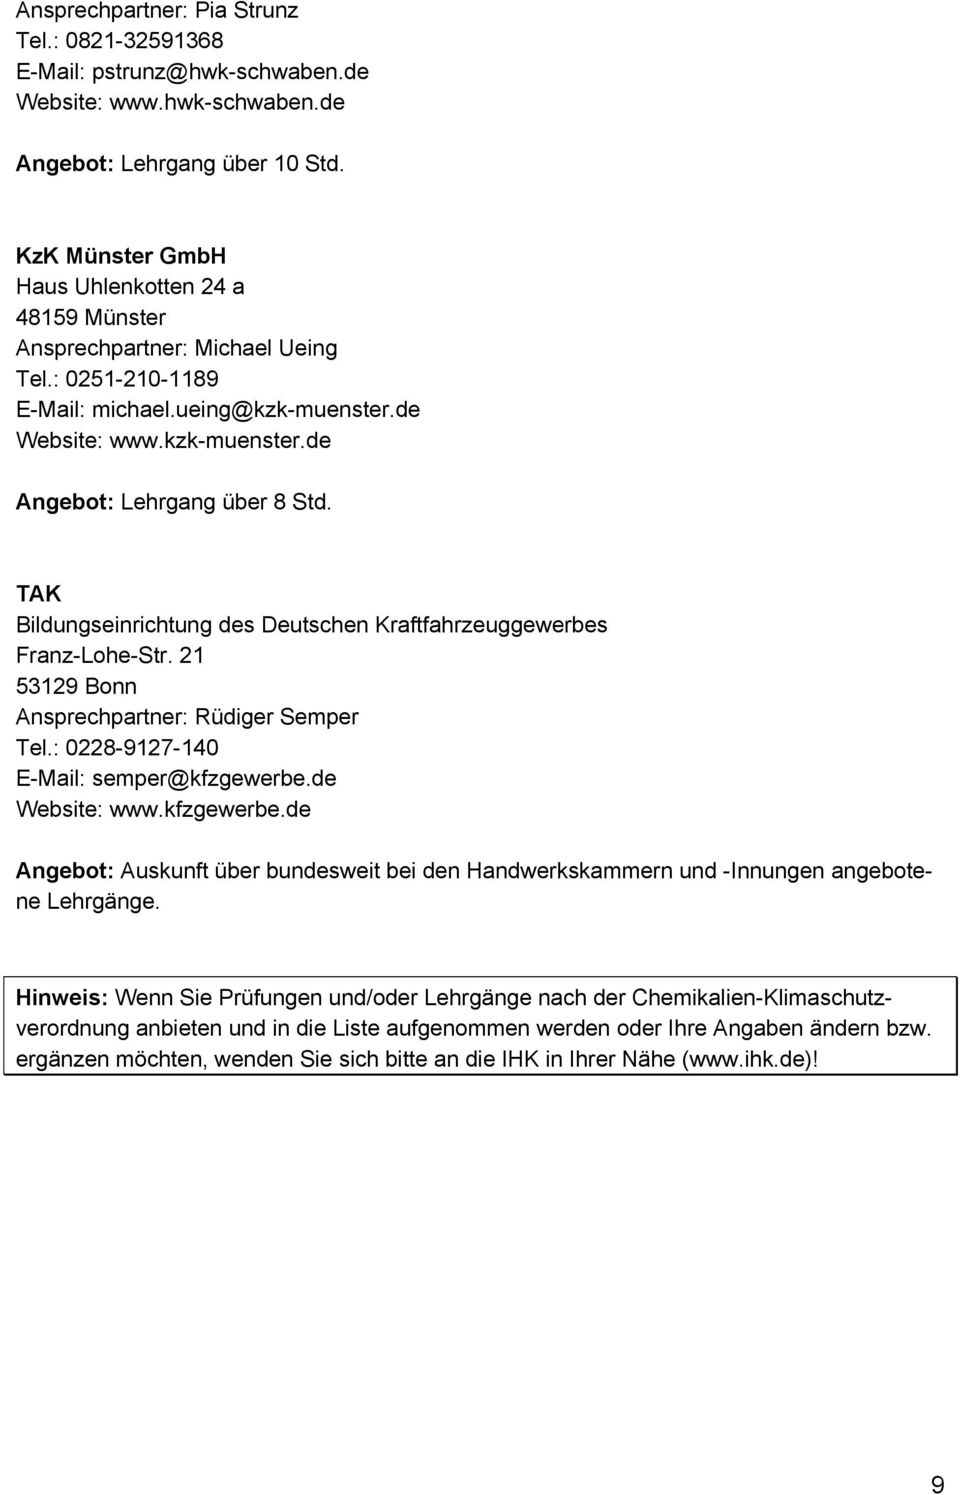 TAK Bildungseinrichtung des Deutschen Kraftfahrzeuggewerbes Franz-Lohe-Str. 21 53129 Bonn Ansprechpartner: Rüdiger Semper Tel.: 0228-9127-140 E-Mail: semper@kfzgewerbe.